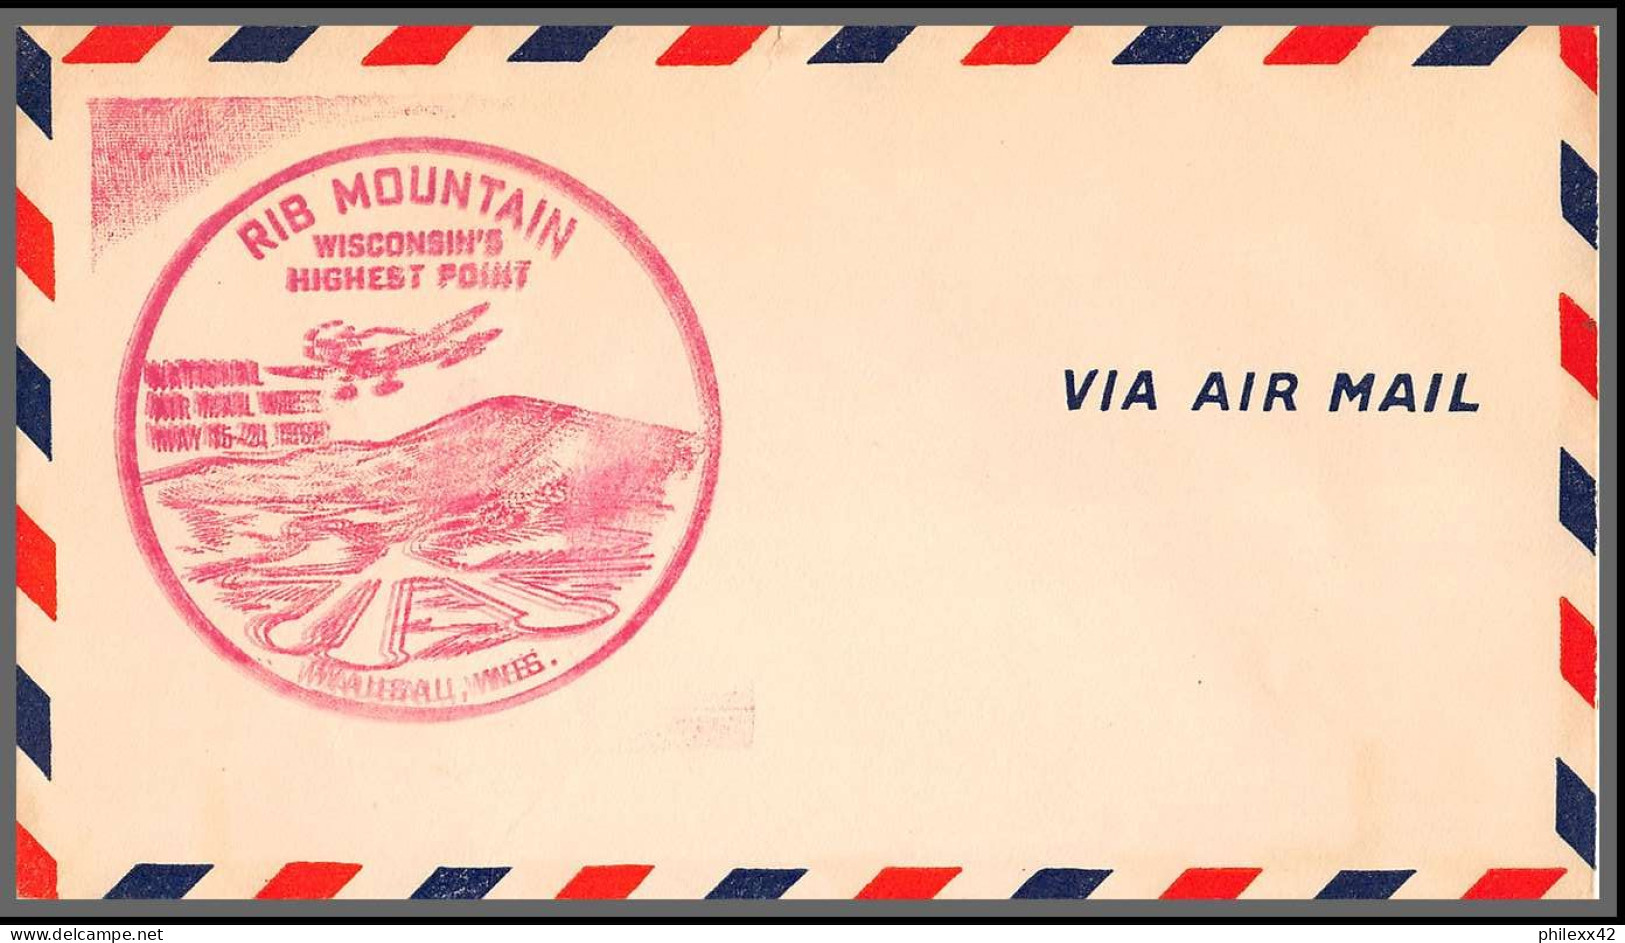 12742 lot de 18 lettres documents premier vol first flight lettre airmail cover usa aviation